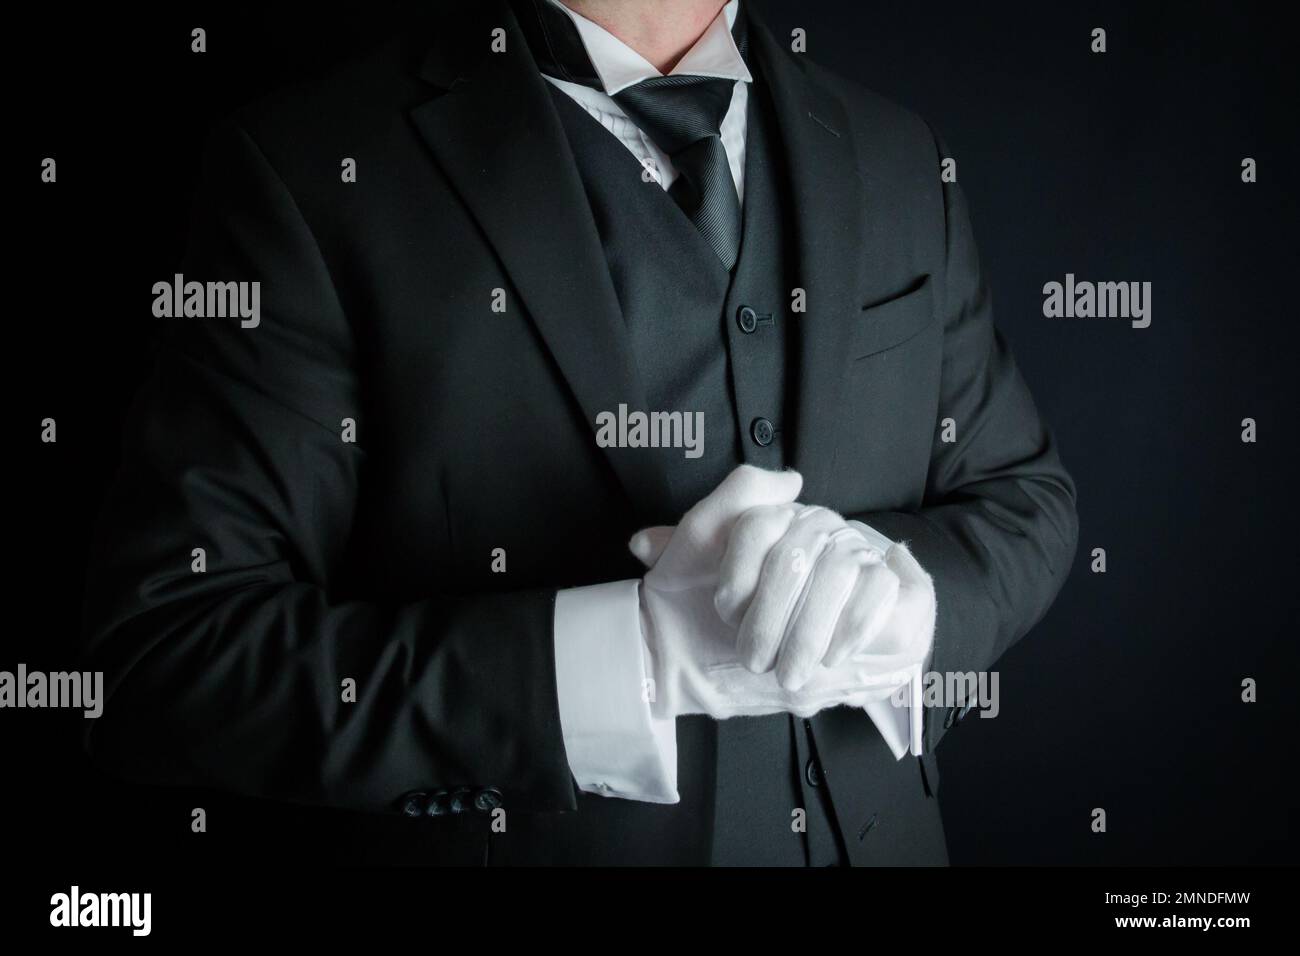 Porträt von Butler in dunklem Anzug und weißen Handschuhen, die gerne zu Diensten sein möchten. Konzept der Dienstleistungsbranche und des professionellen Gastgewerbes. Stockfoto